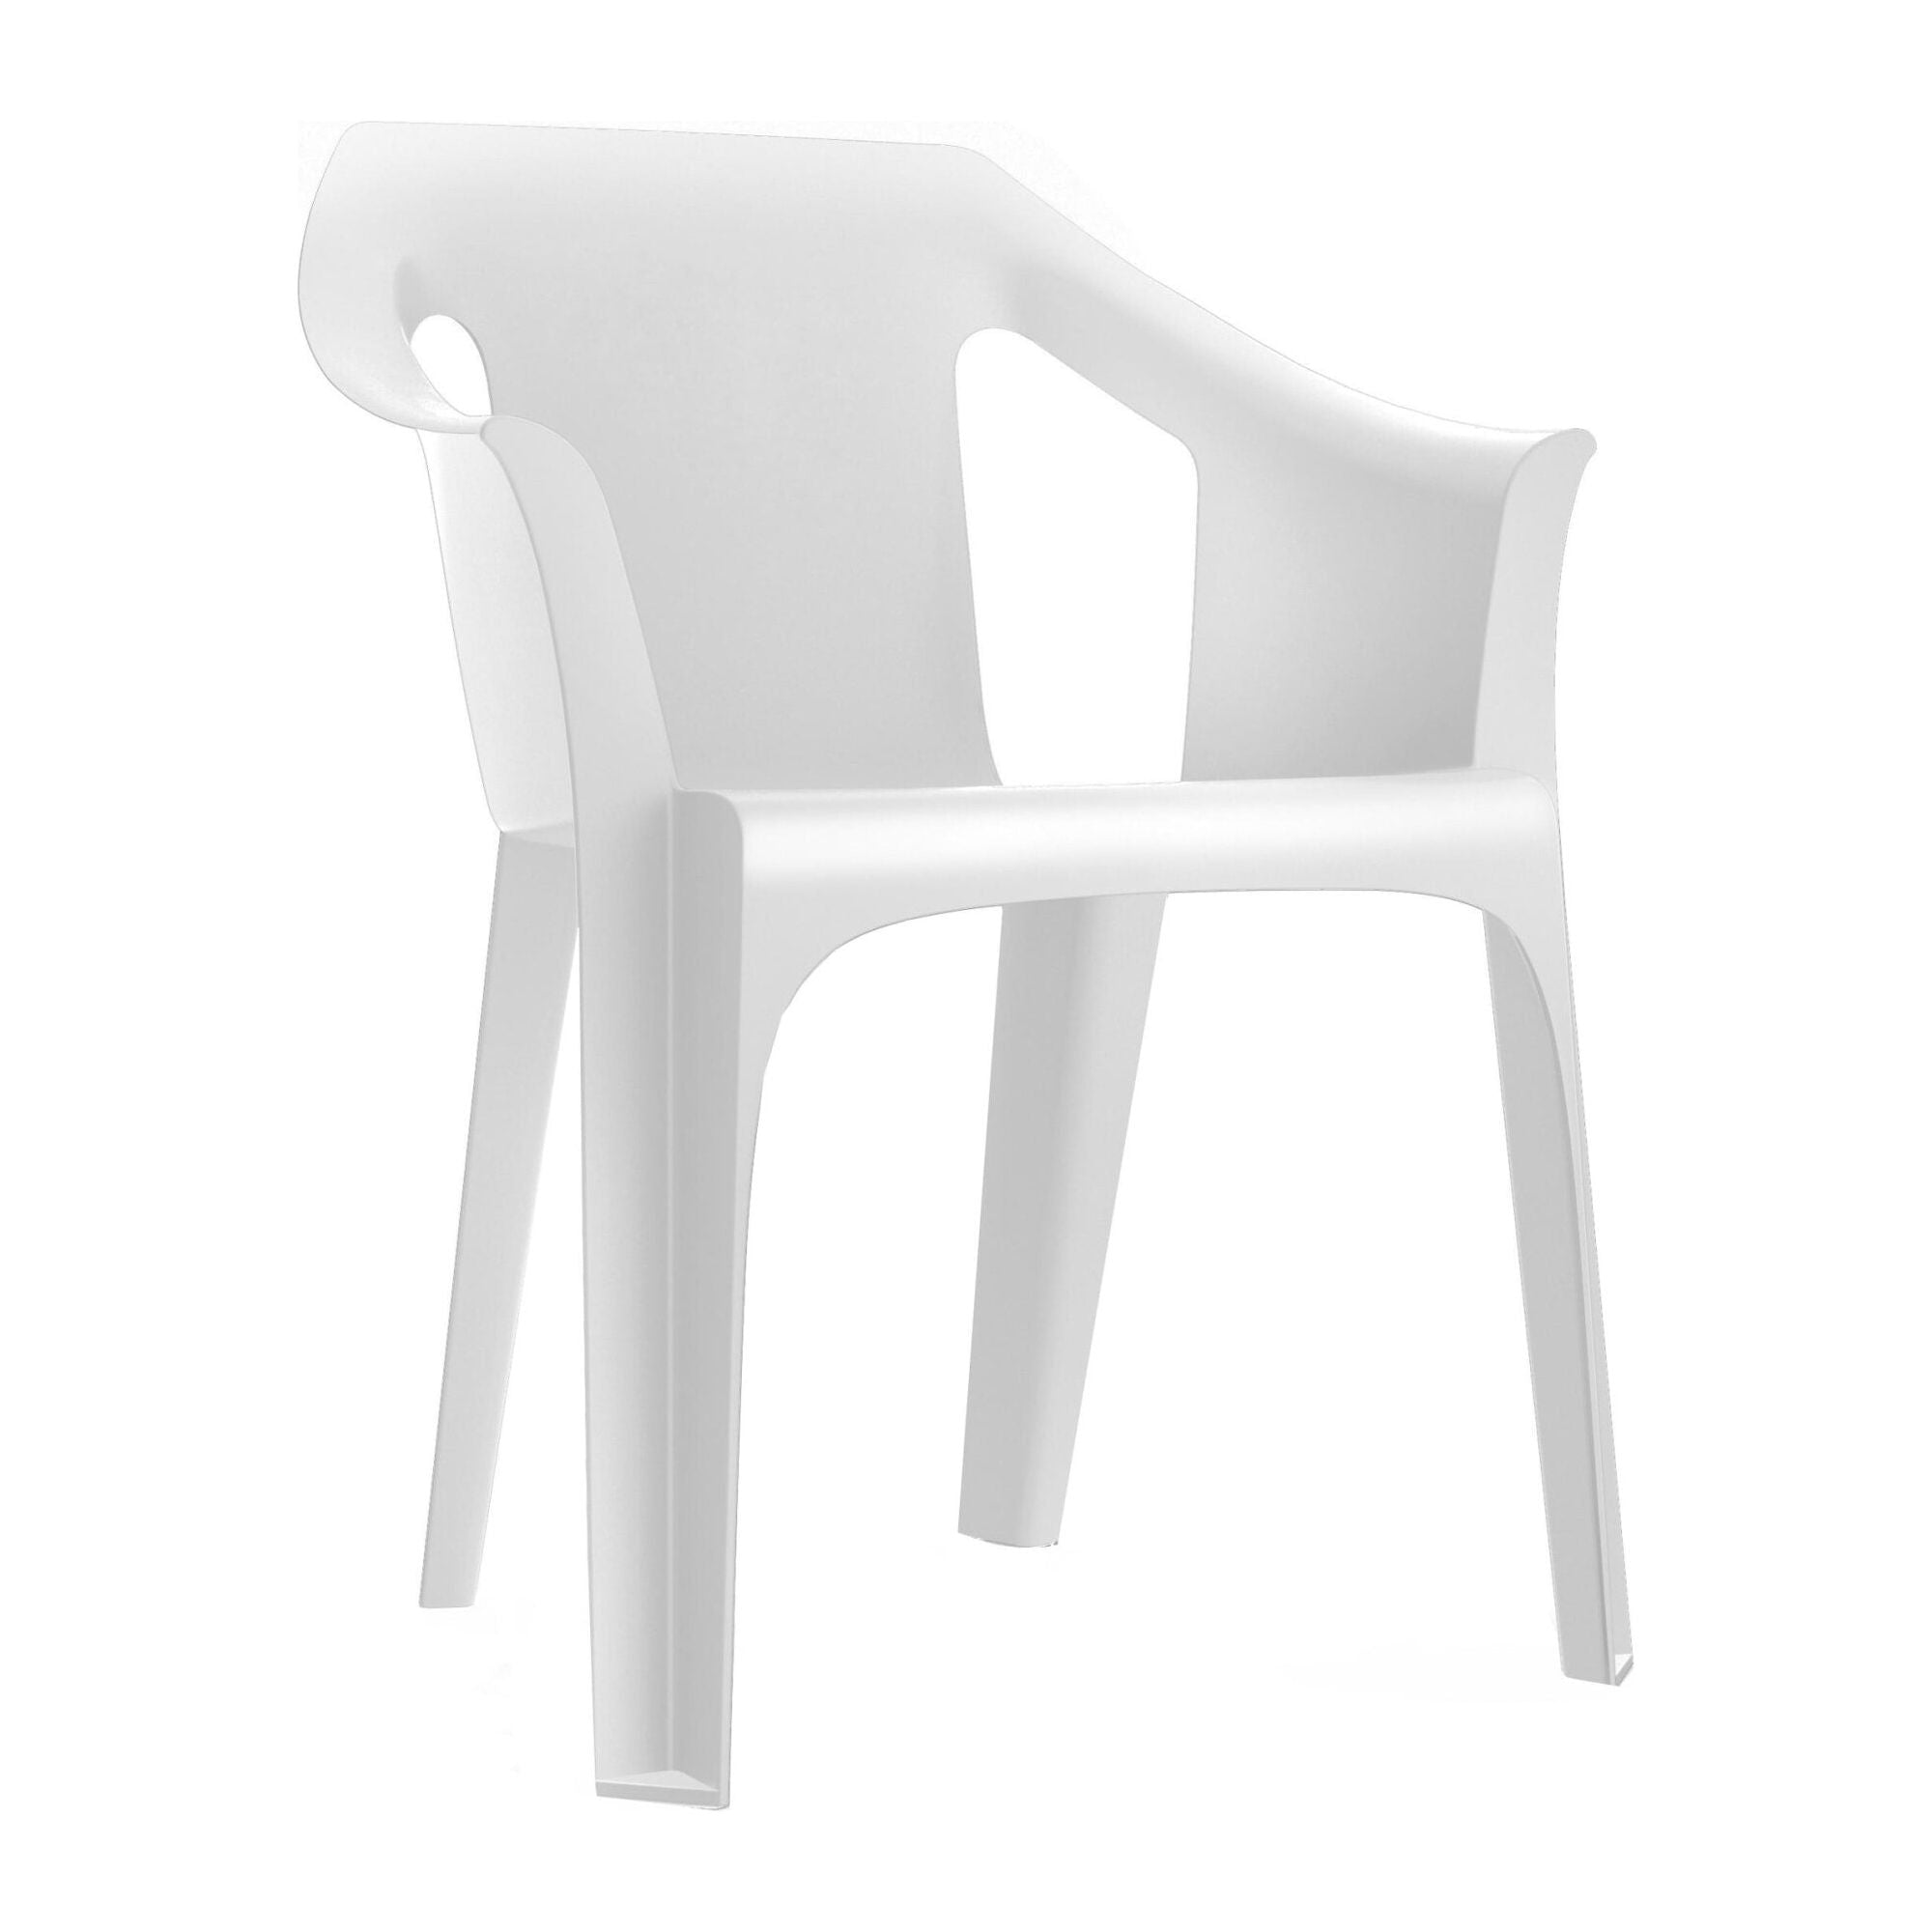 Garbar cool armchair white white